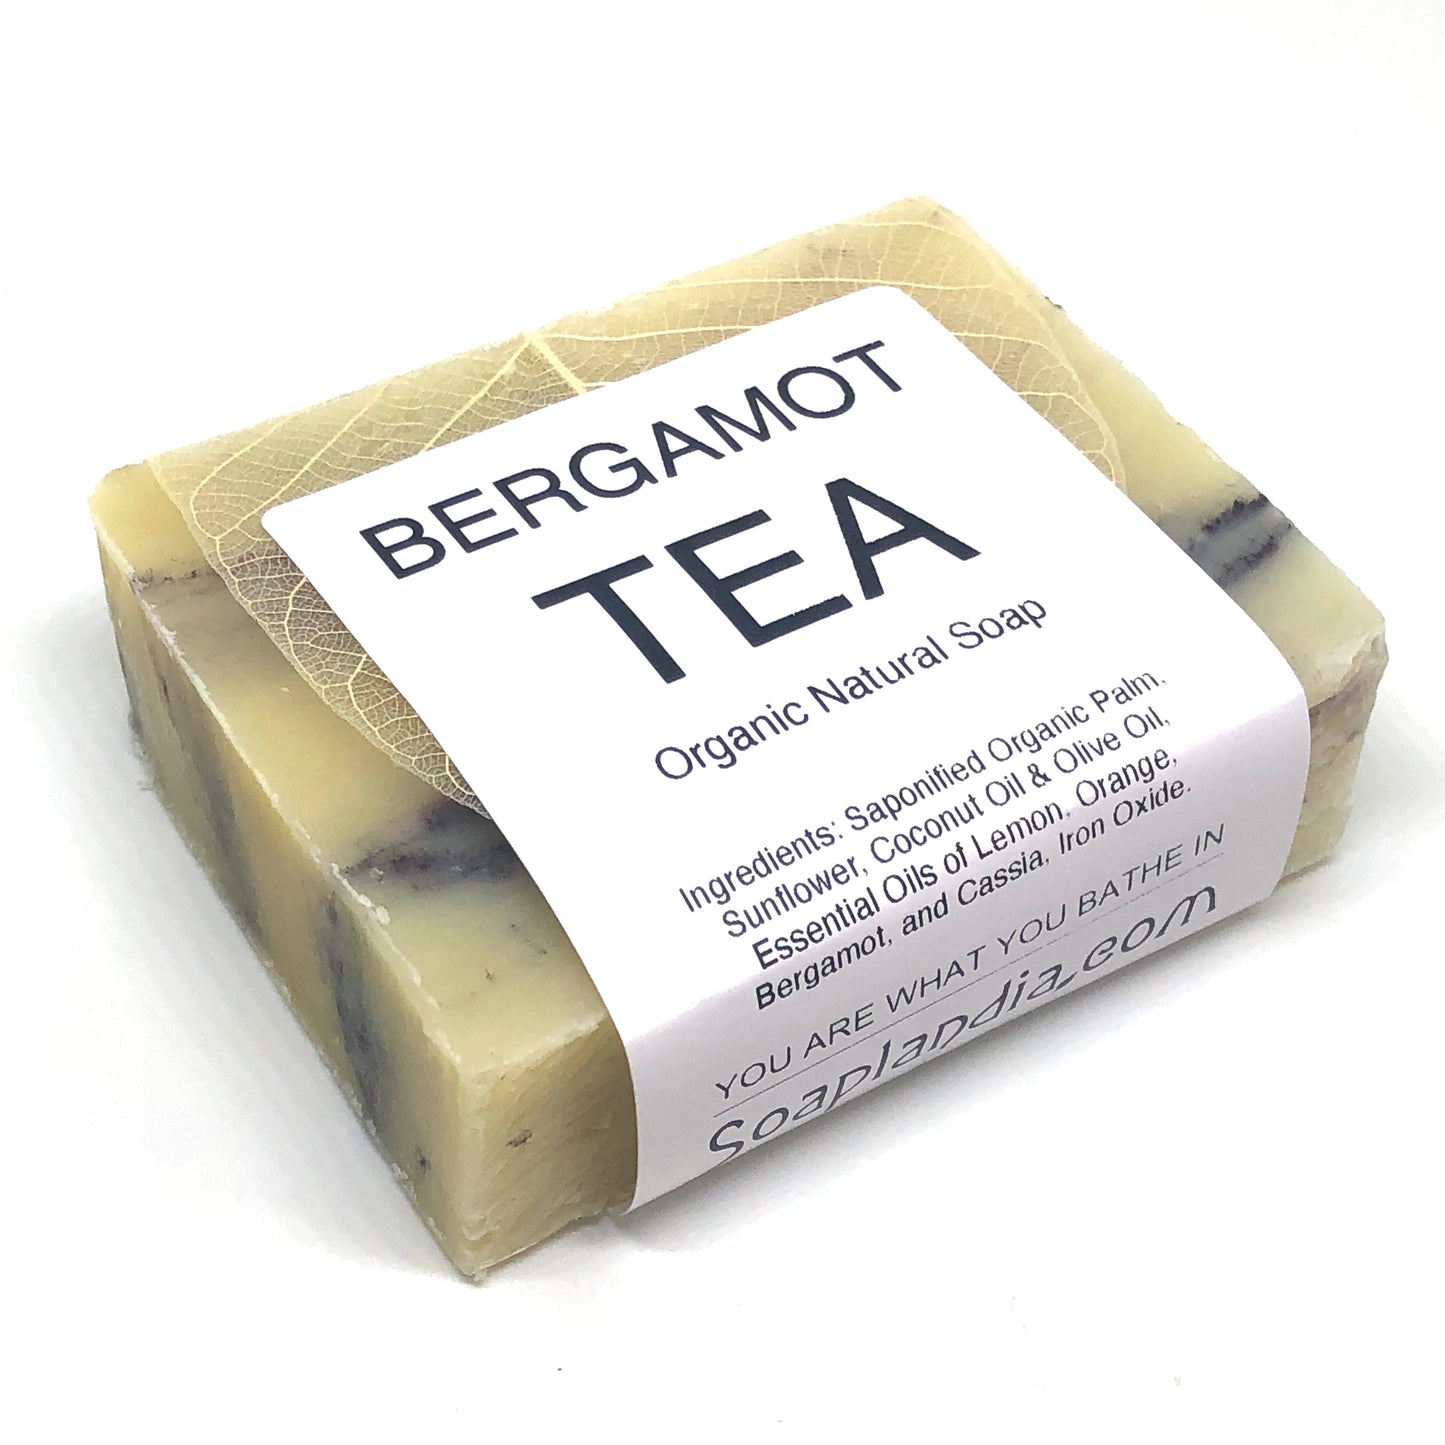 Bergamot Tea Bar Soap, Organic